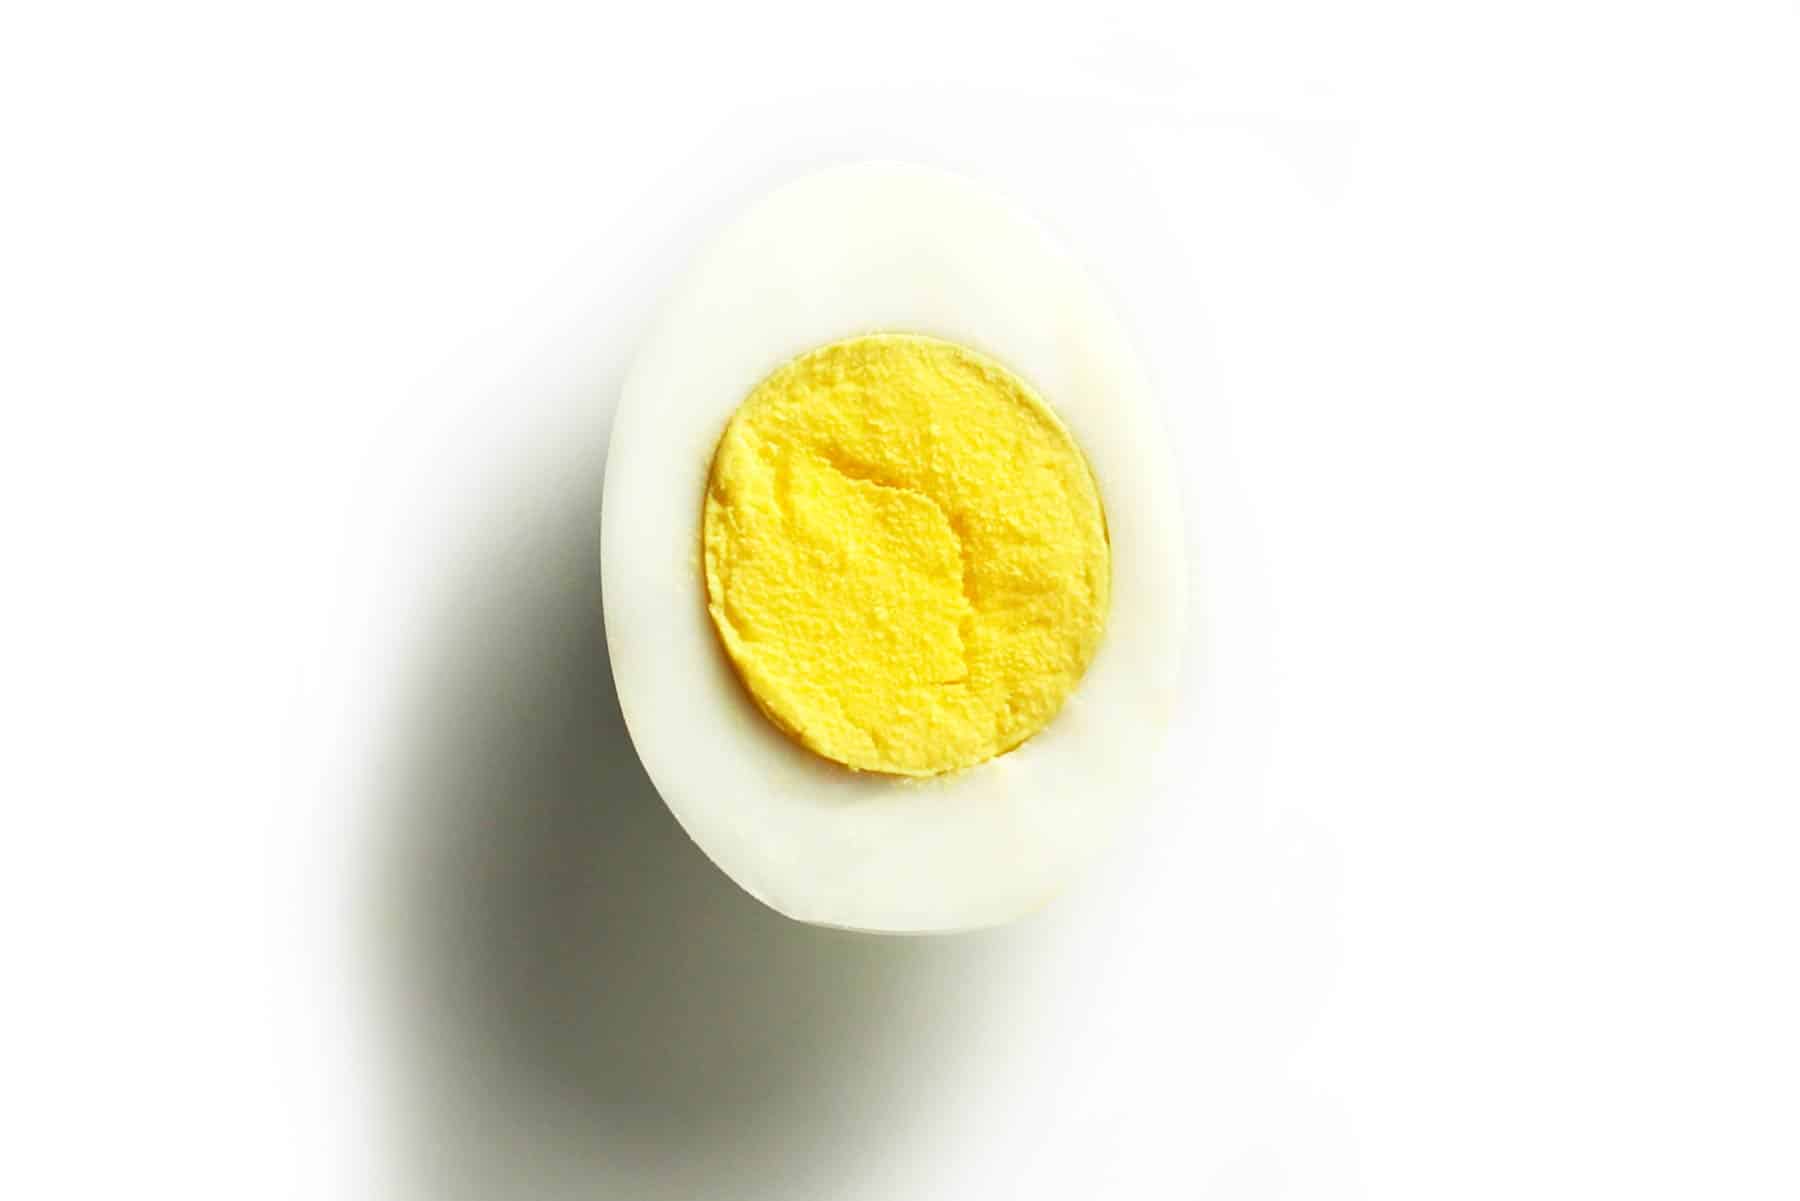 https://www.zestedlemon.com/wp-content/uploads/2016/10/Hard-Boiled-Eggs-in-Oven-Recipe-Card.jpg